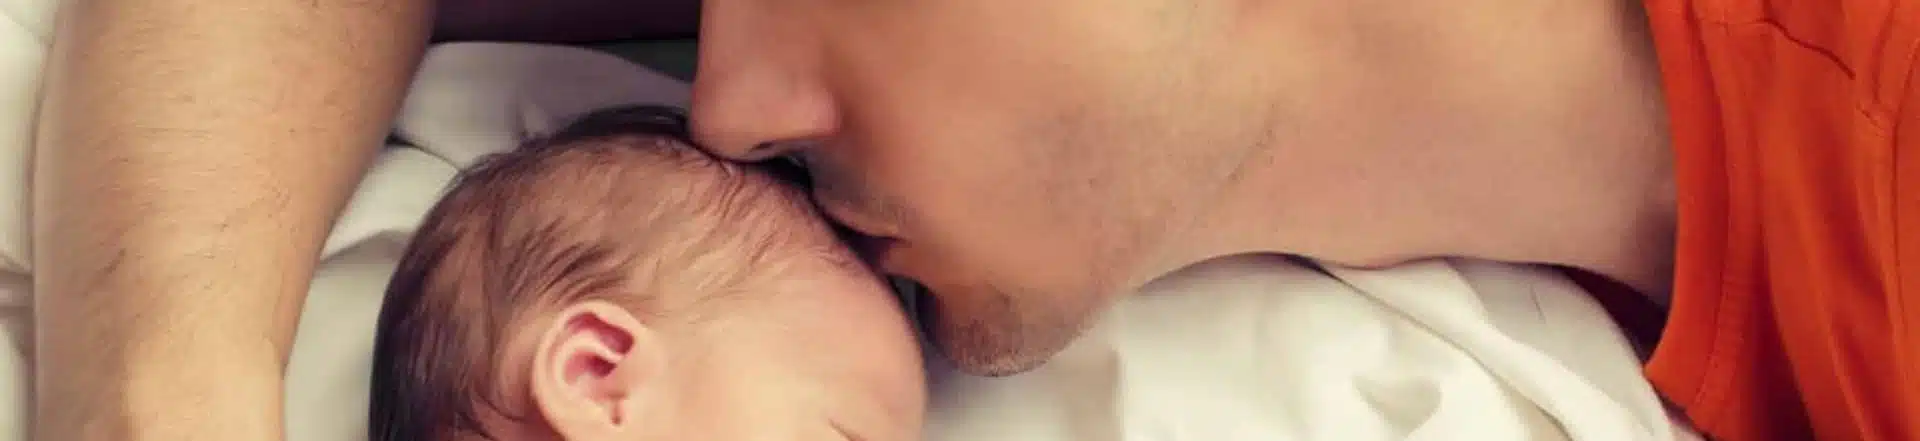 אבא מנשק תינוק בראש